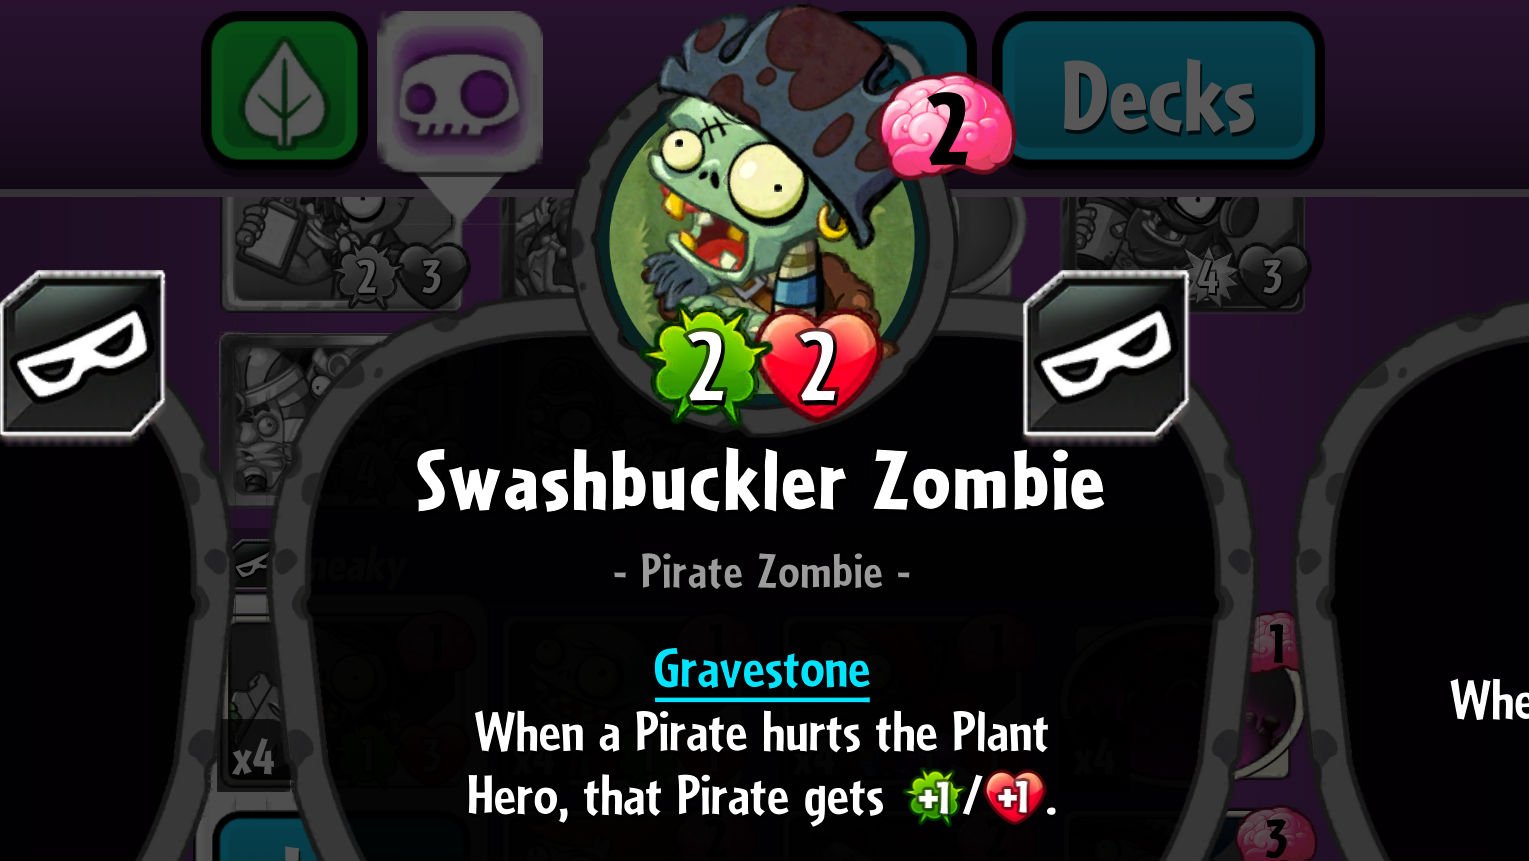 Plants vs. Zombies Heroes Swashbuckler Zombie